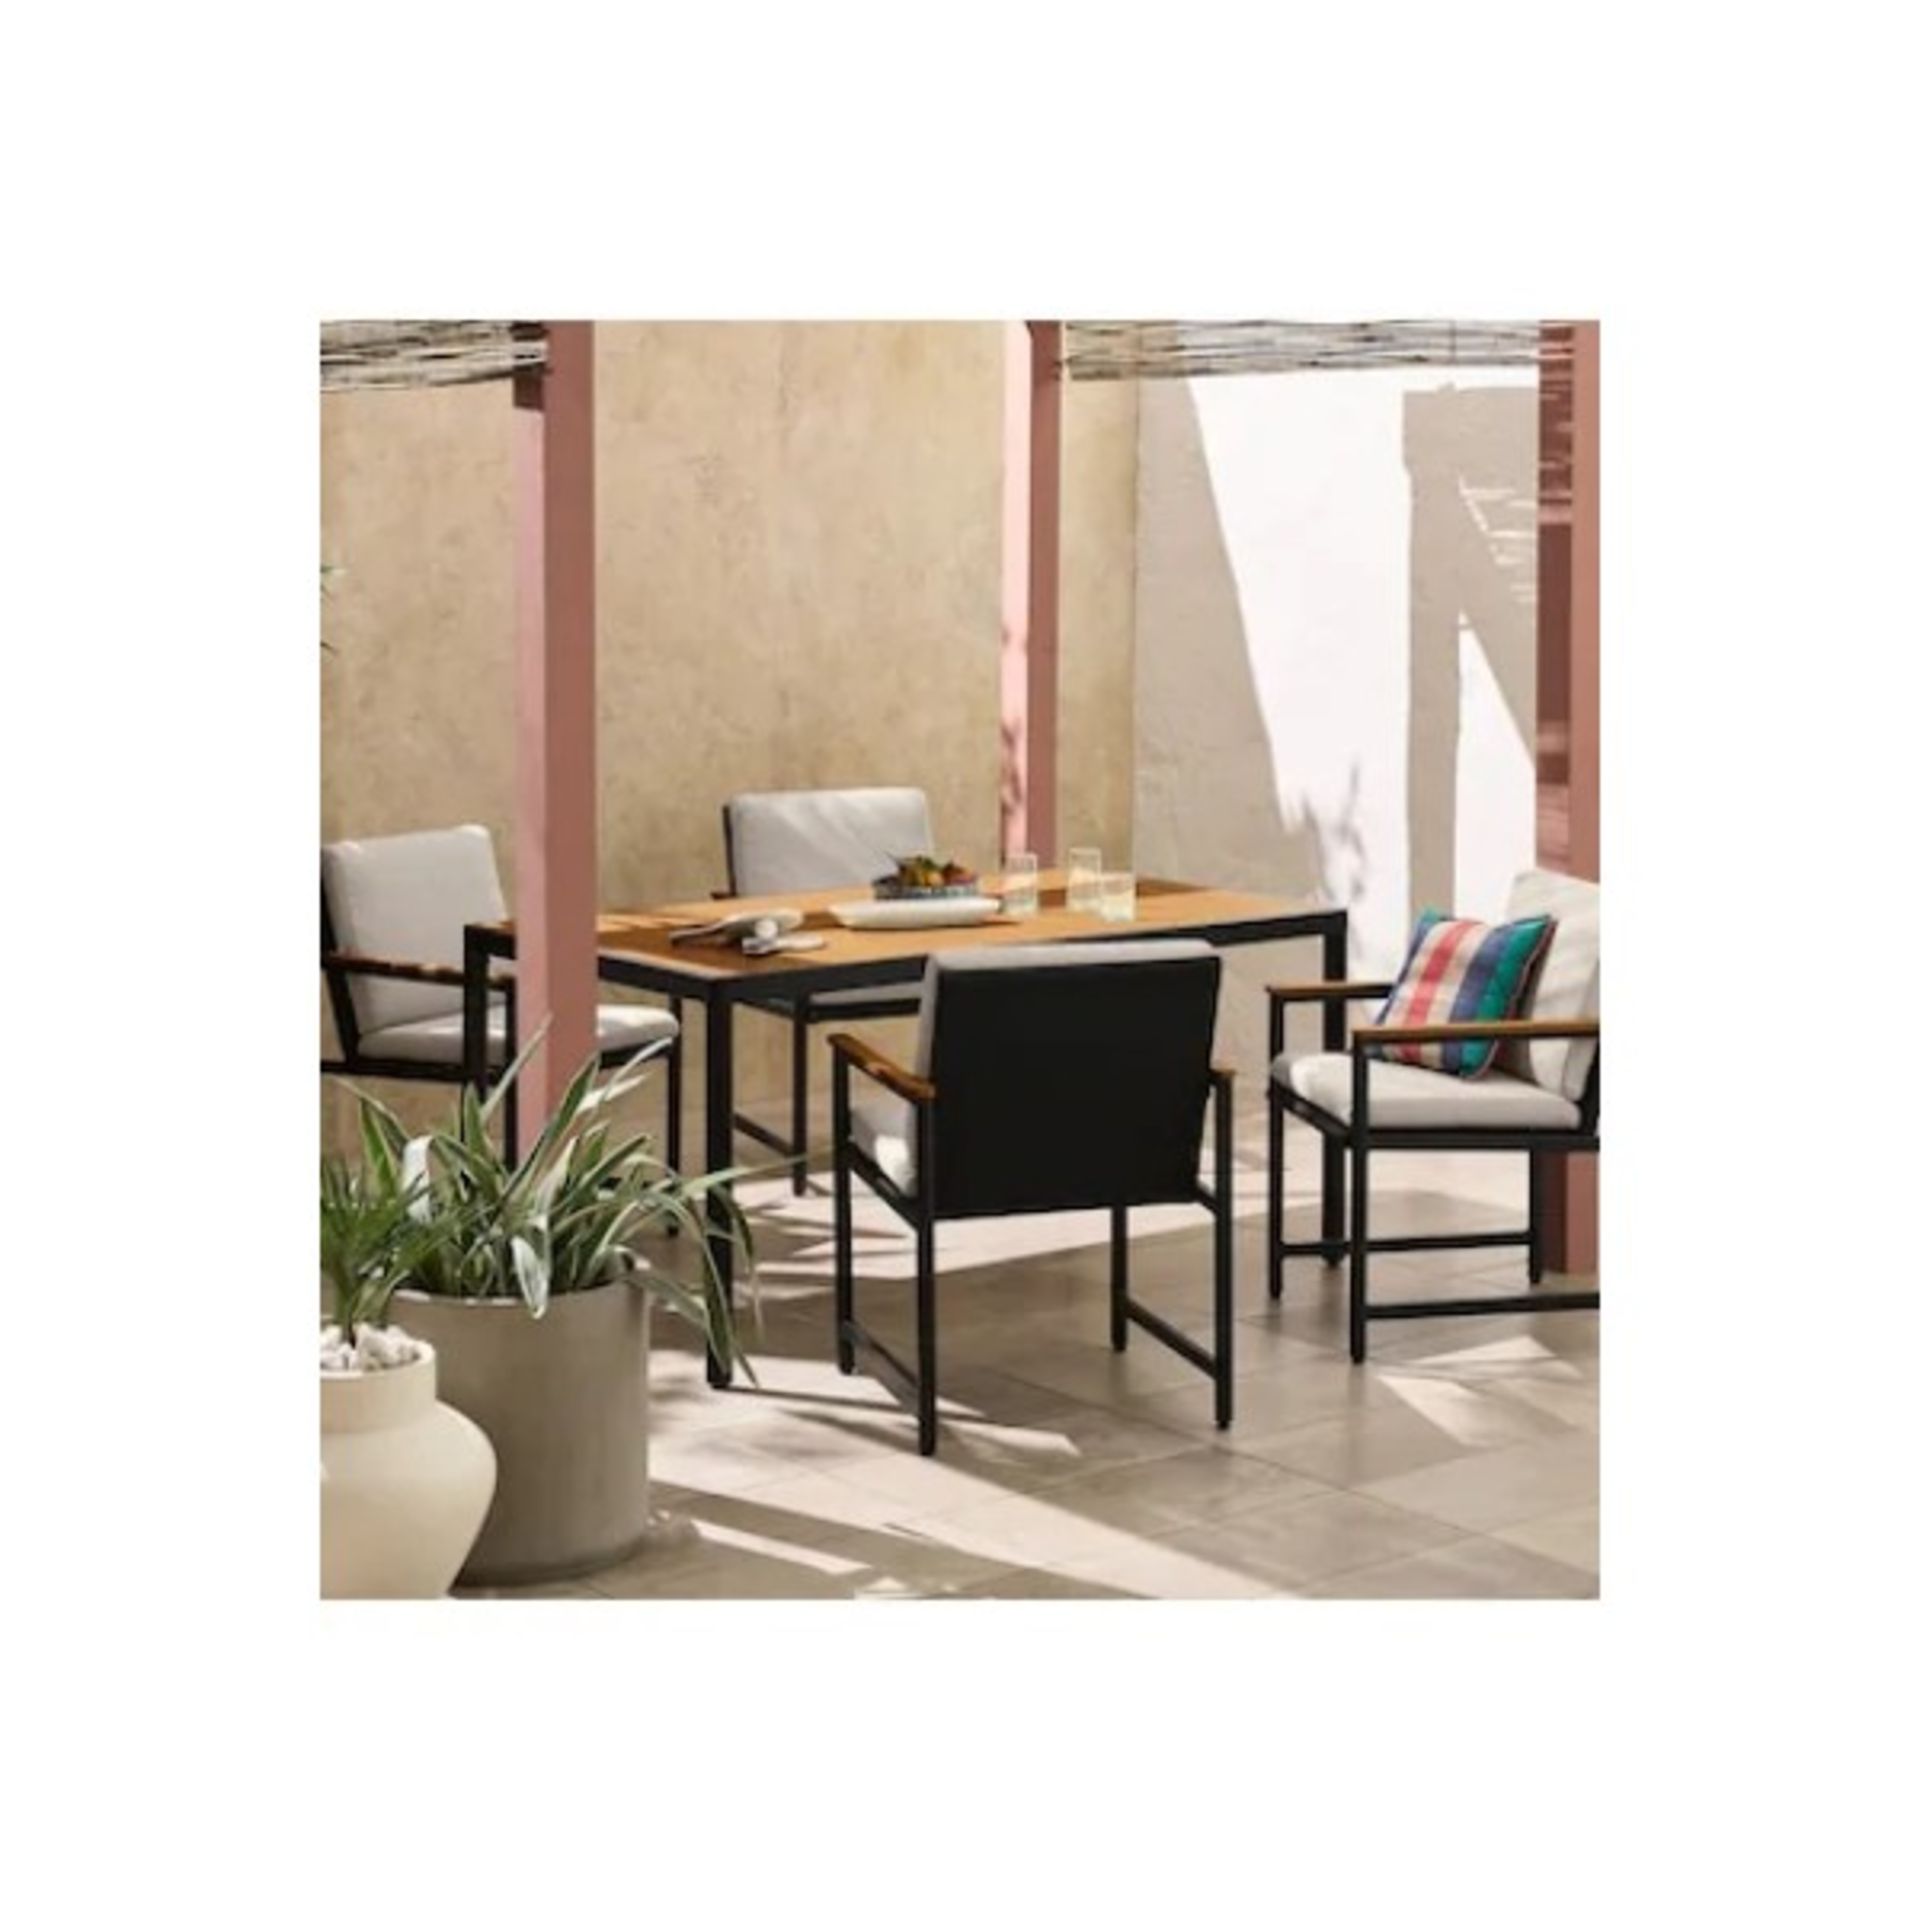 BRAND NEW Made.com Sassari Garden 4 Seater Dining Set. RRP £999.00. Aluminium Frame + PS Wood +